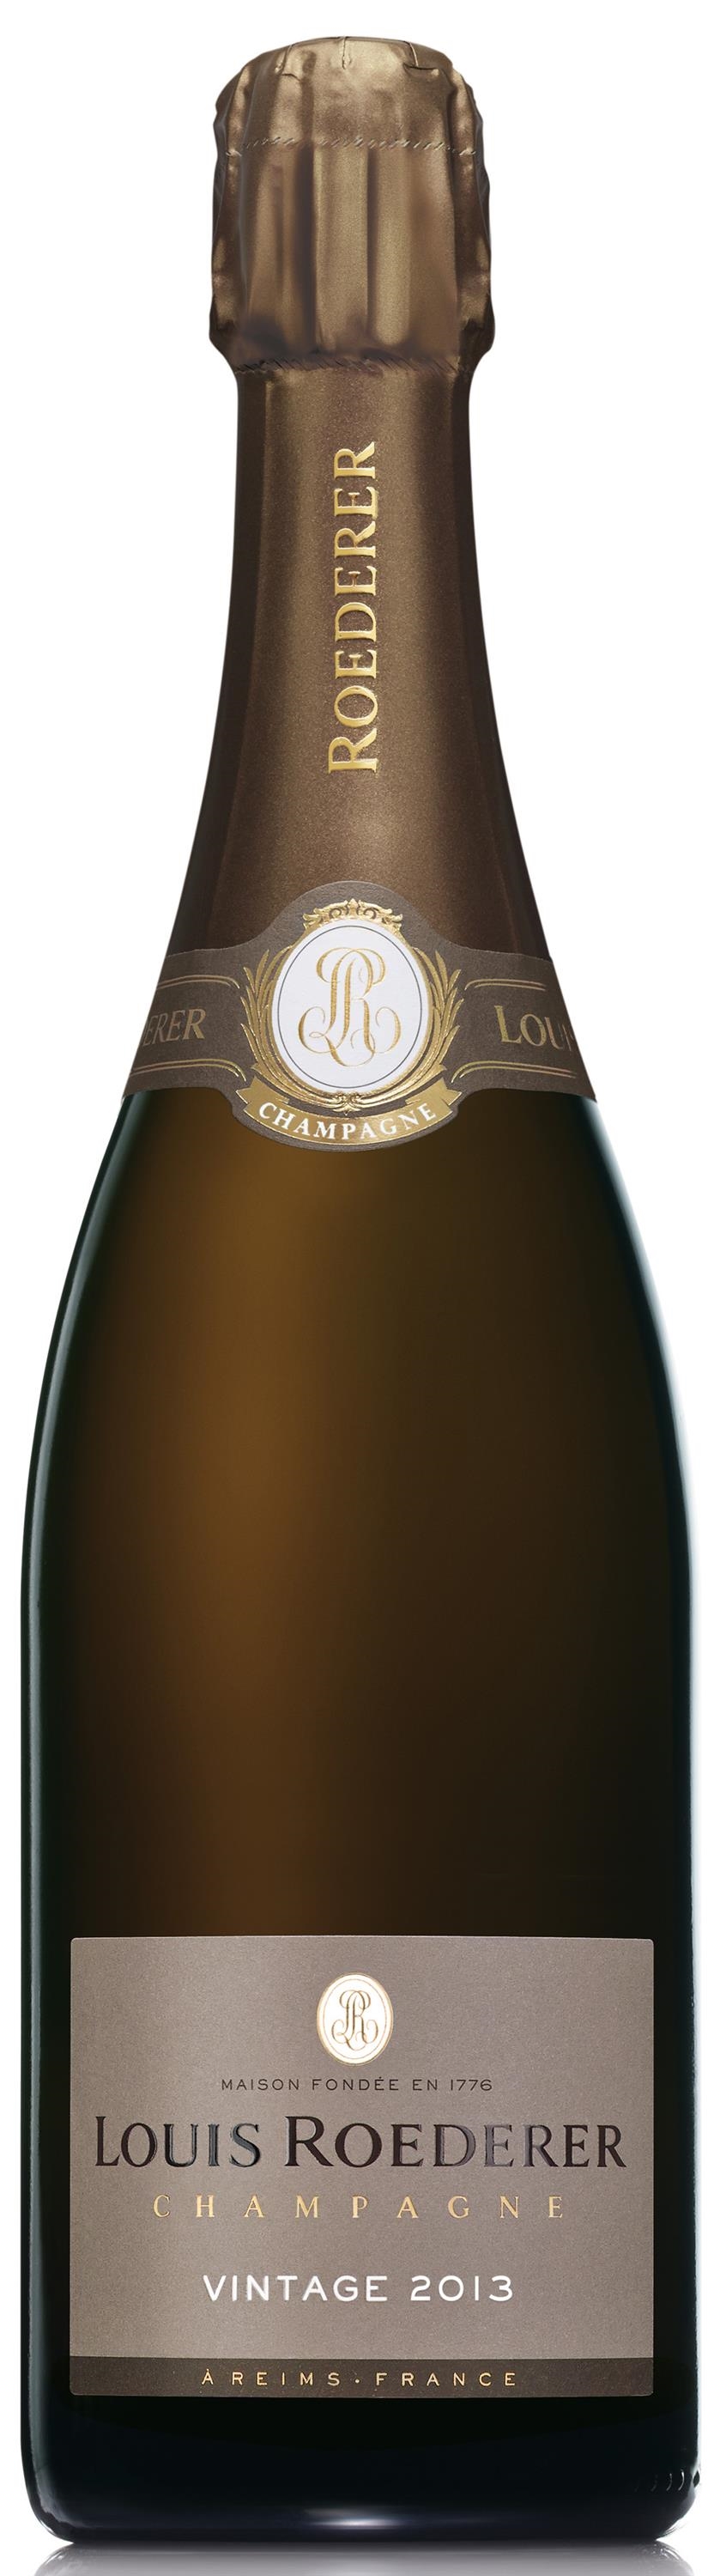 Champagne Louis Roederer Brut Vintage 2013